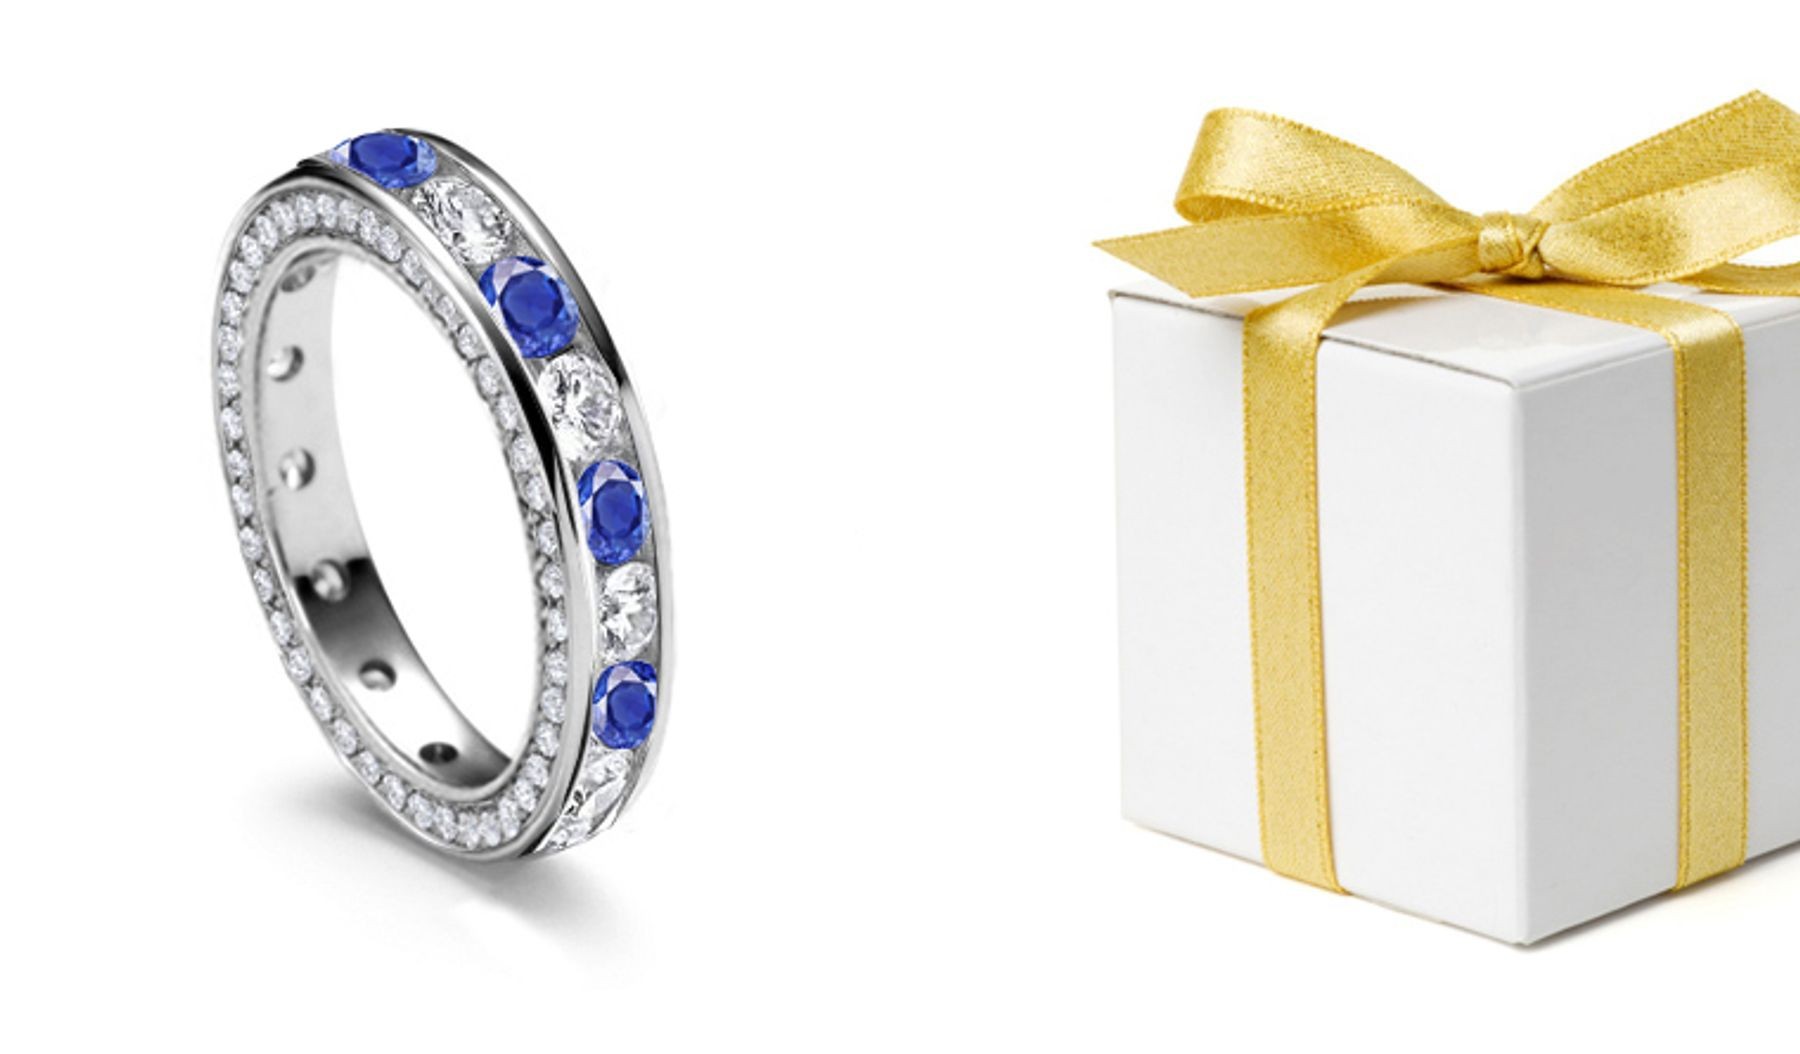 Diamond & Sapphire Eternity Ring With Diamond Sprinkle